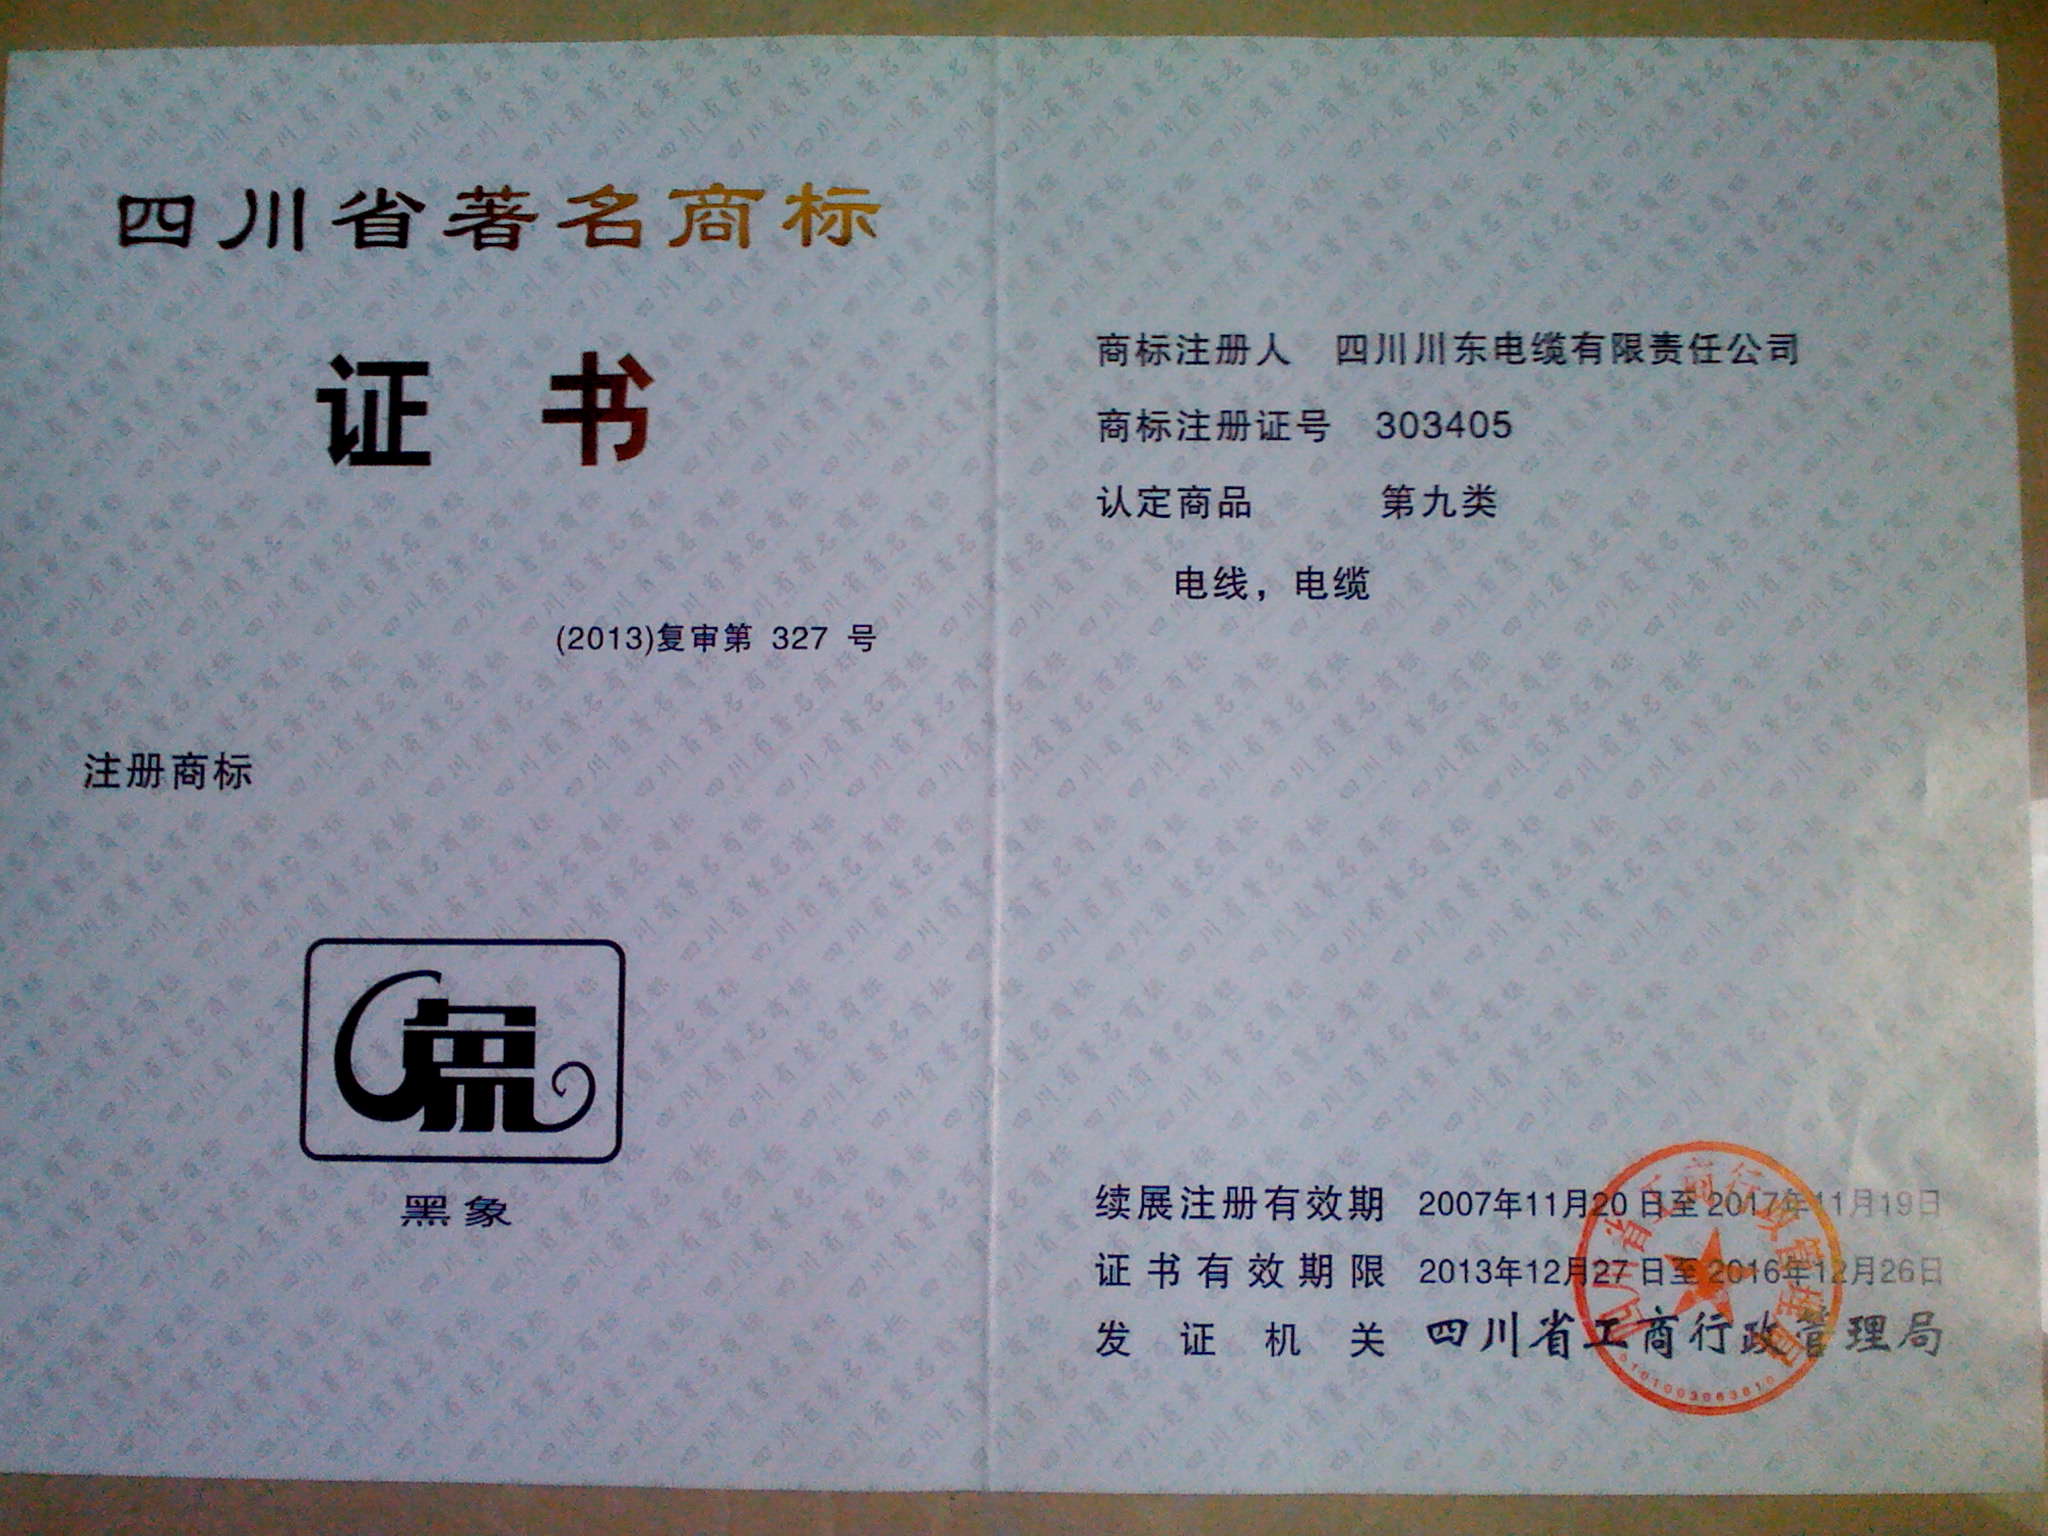 2014 Sichuan famous trademark